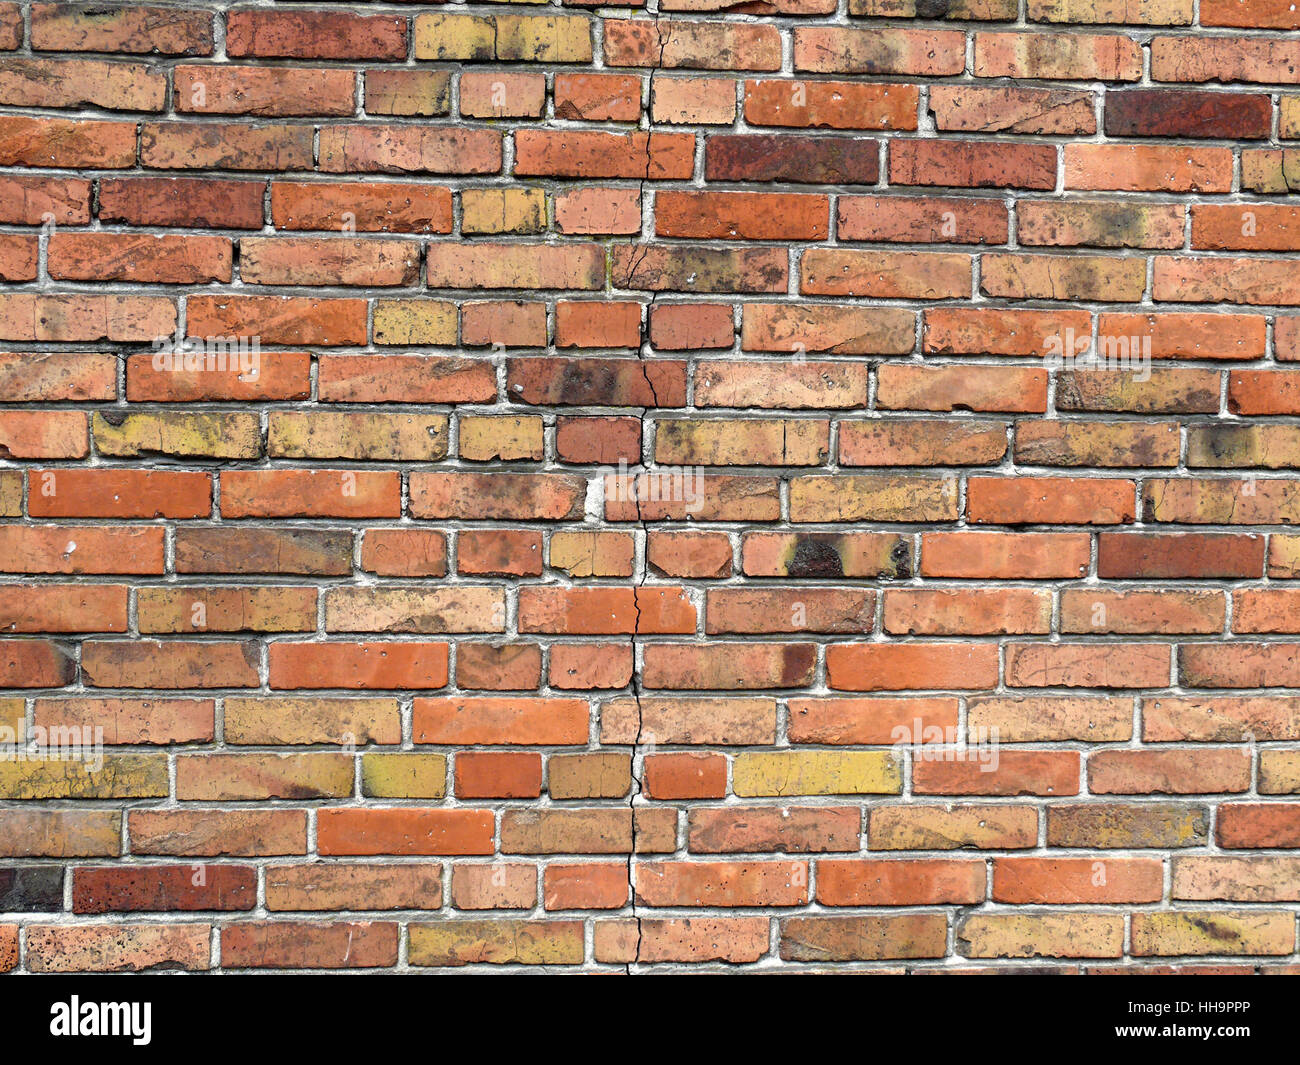 Wand, Fassade, Mauerwerk, stonewall, Solid, Hintergrund, Hintergrund,  Klinker, Ziegel Stockfotografie - Alamy